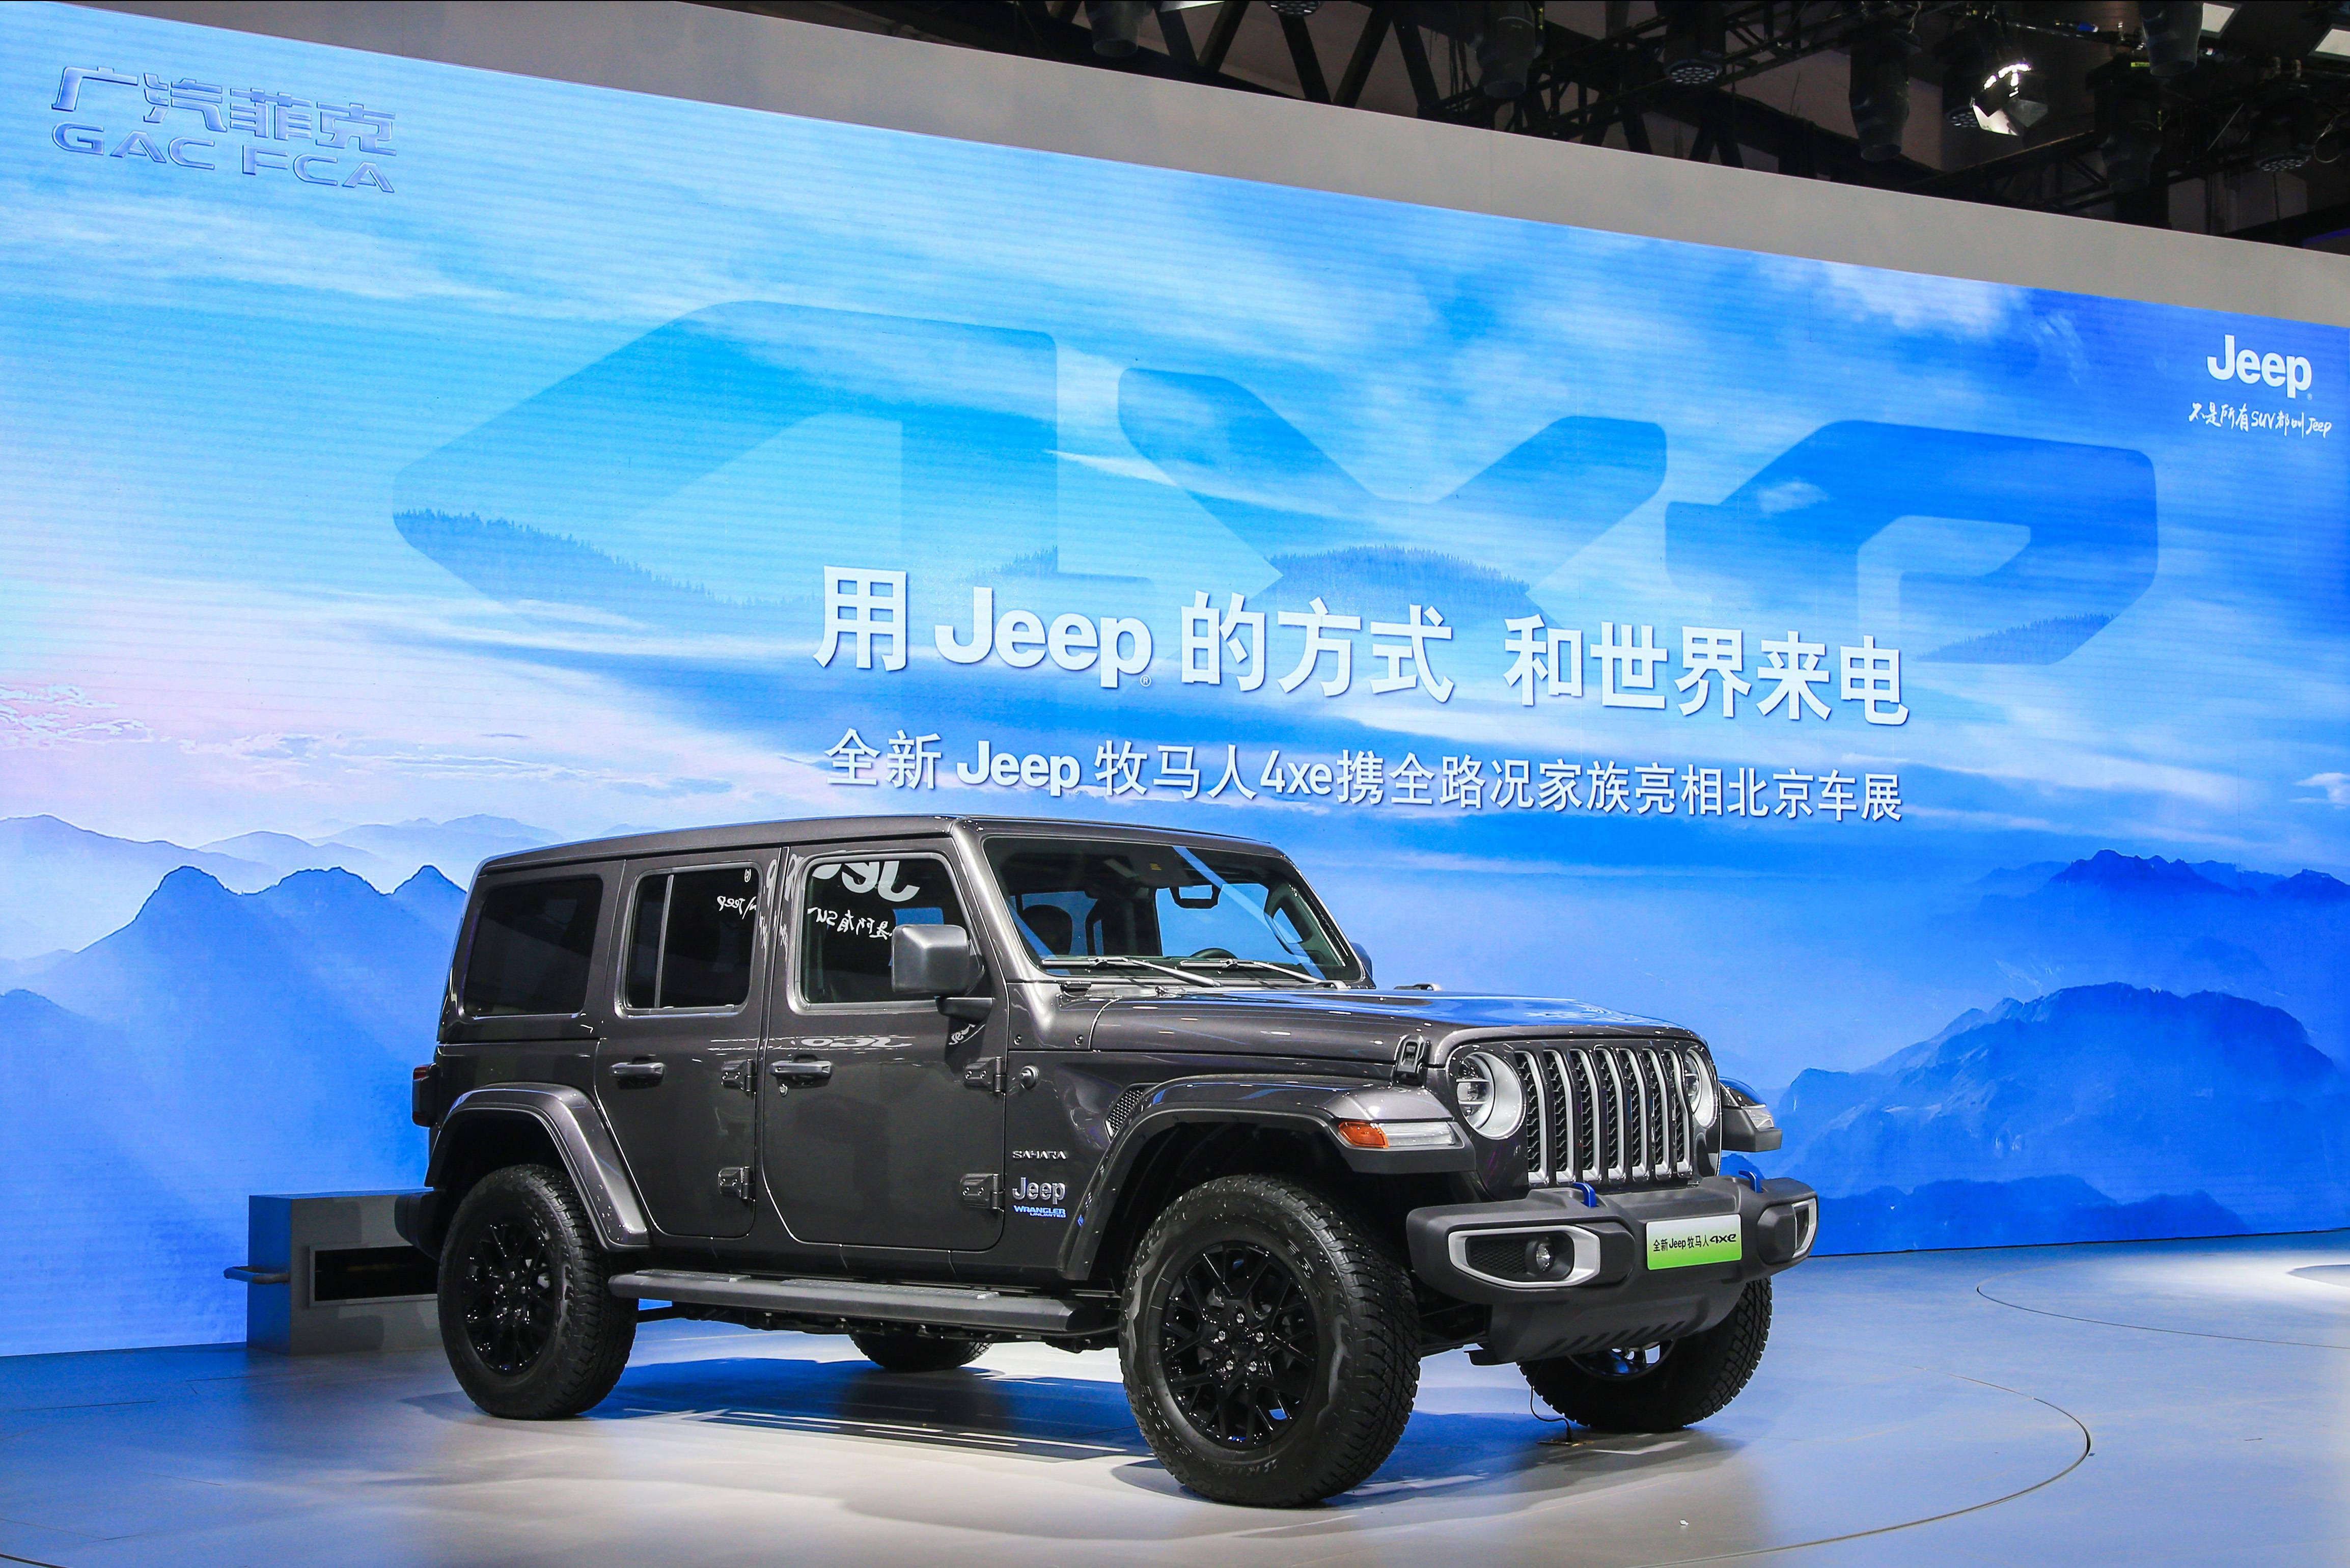 jeep正式发布全新牧马人4xe,作为一款插电式混合动力车型,据透露,全新